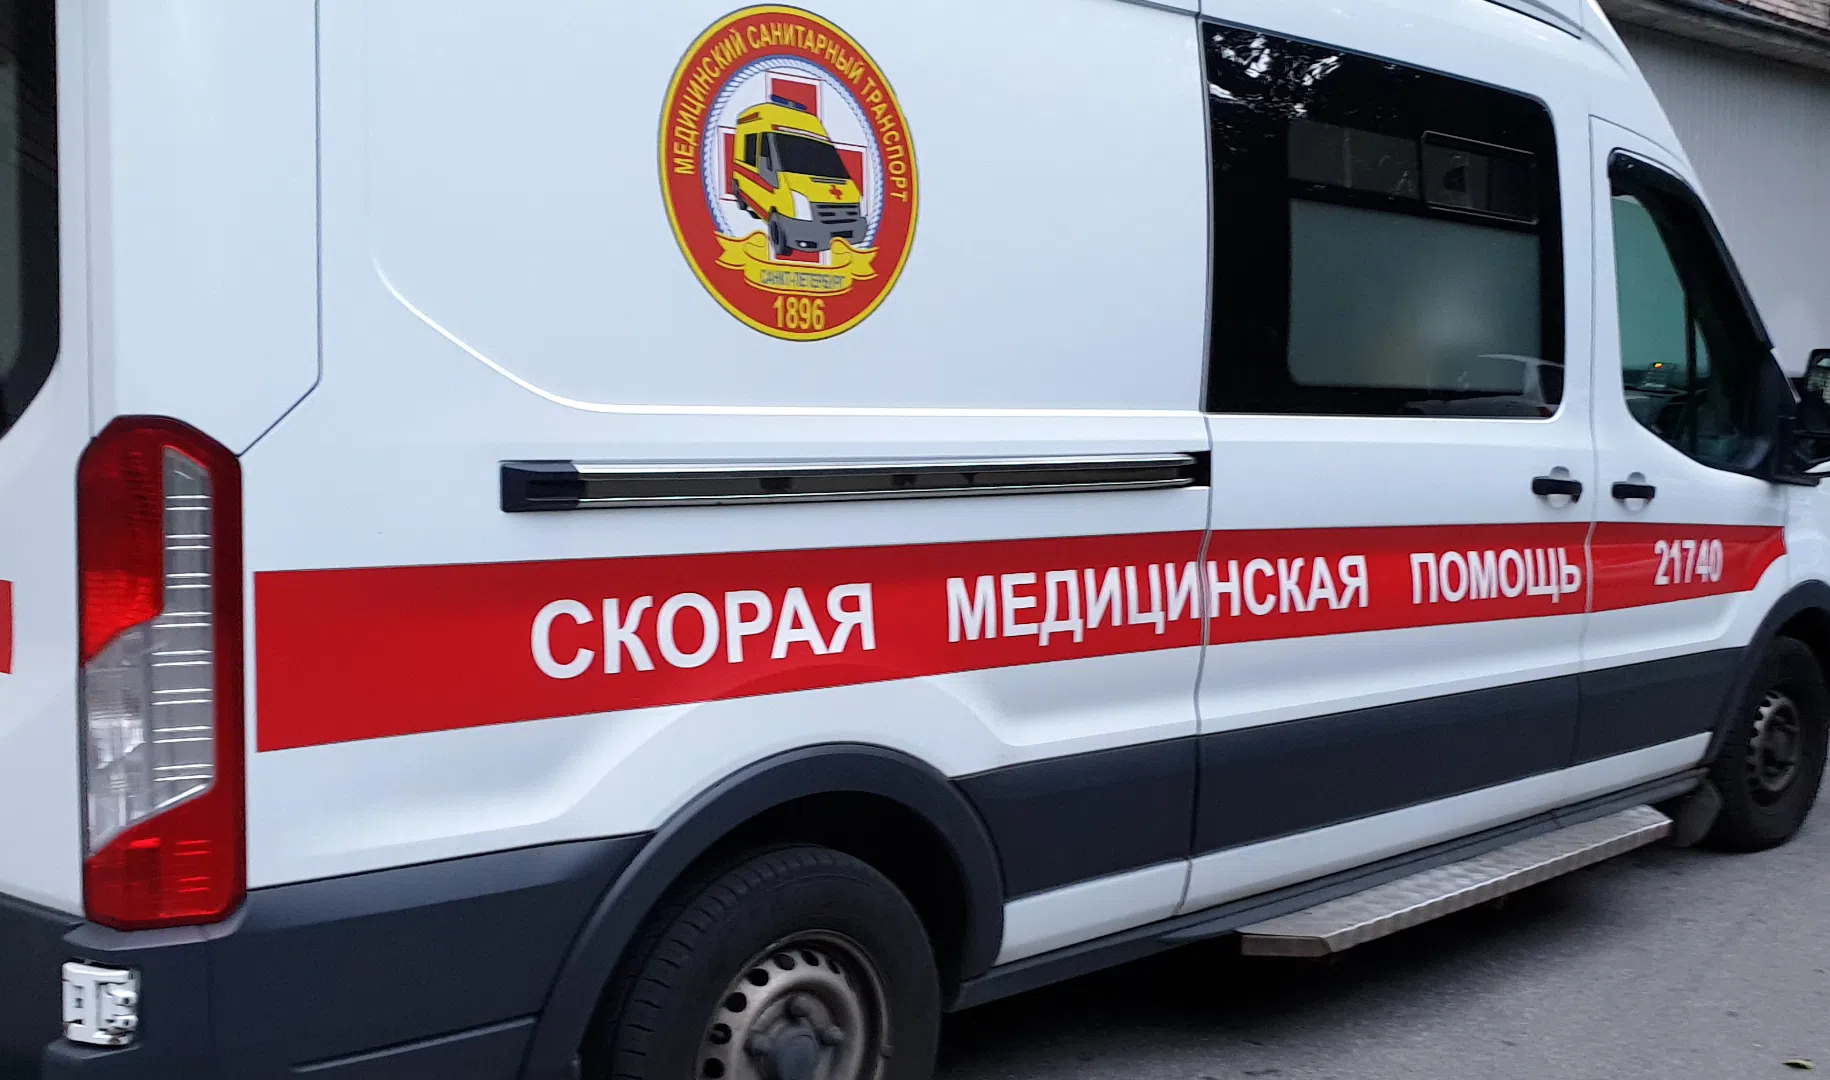 Восемь человек пострадали при столкновении машины с троллейбусом в Московском районе